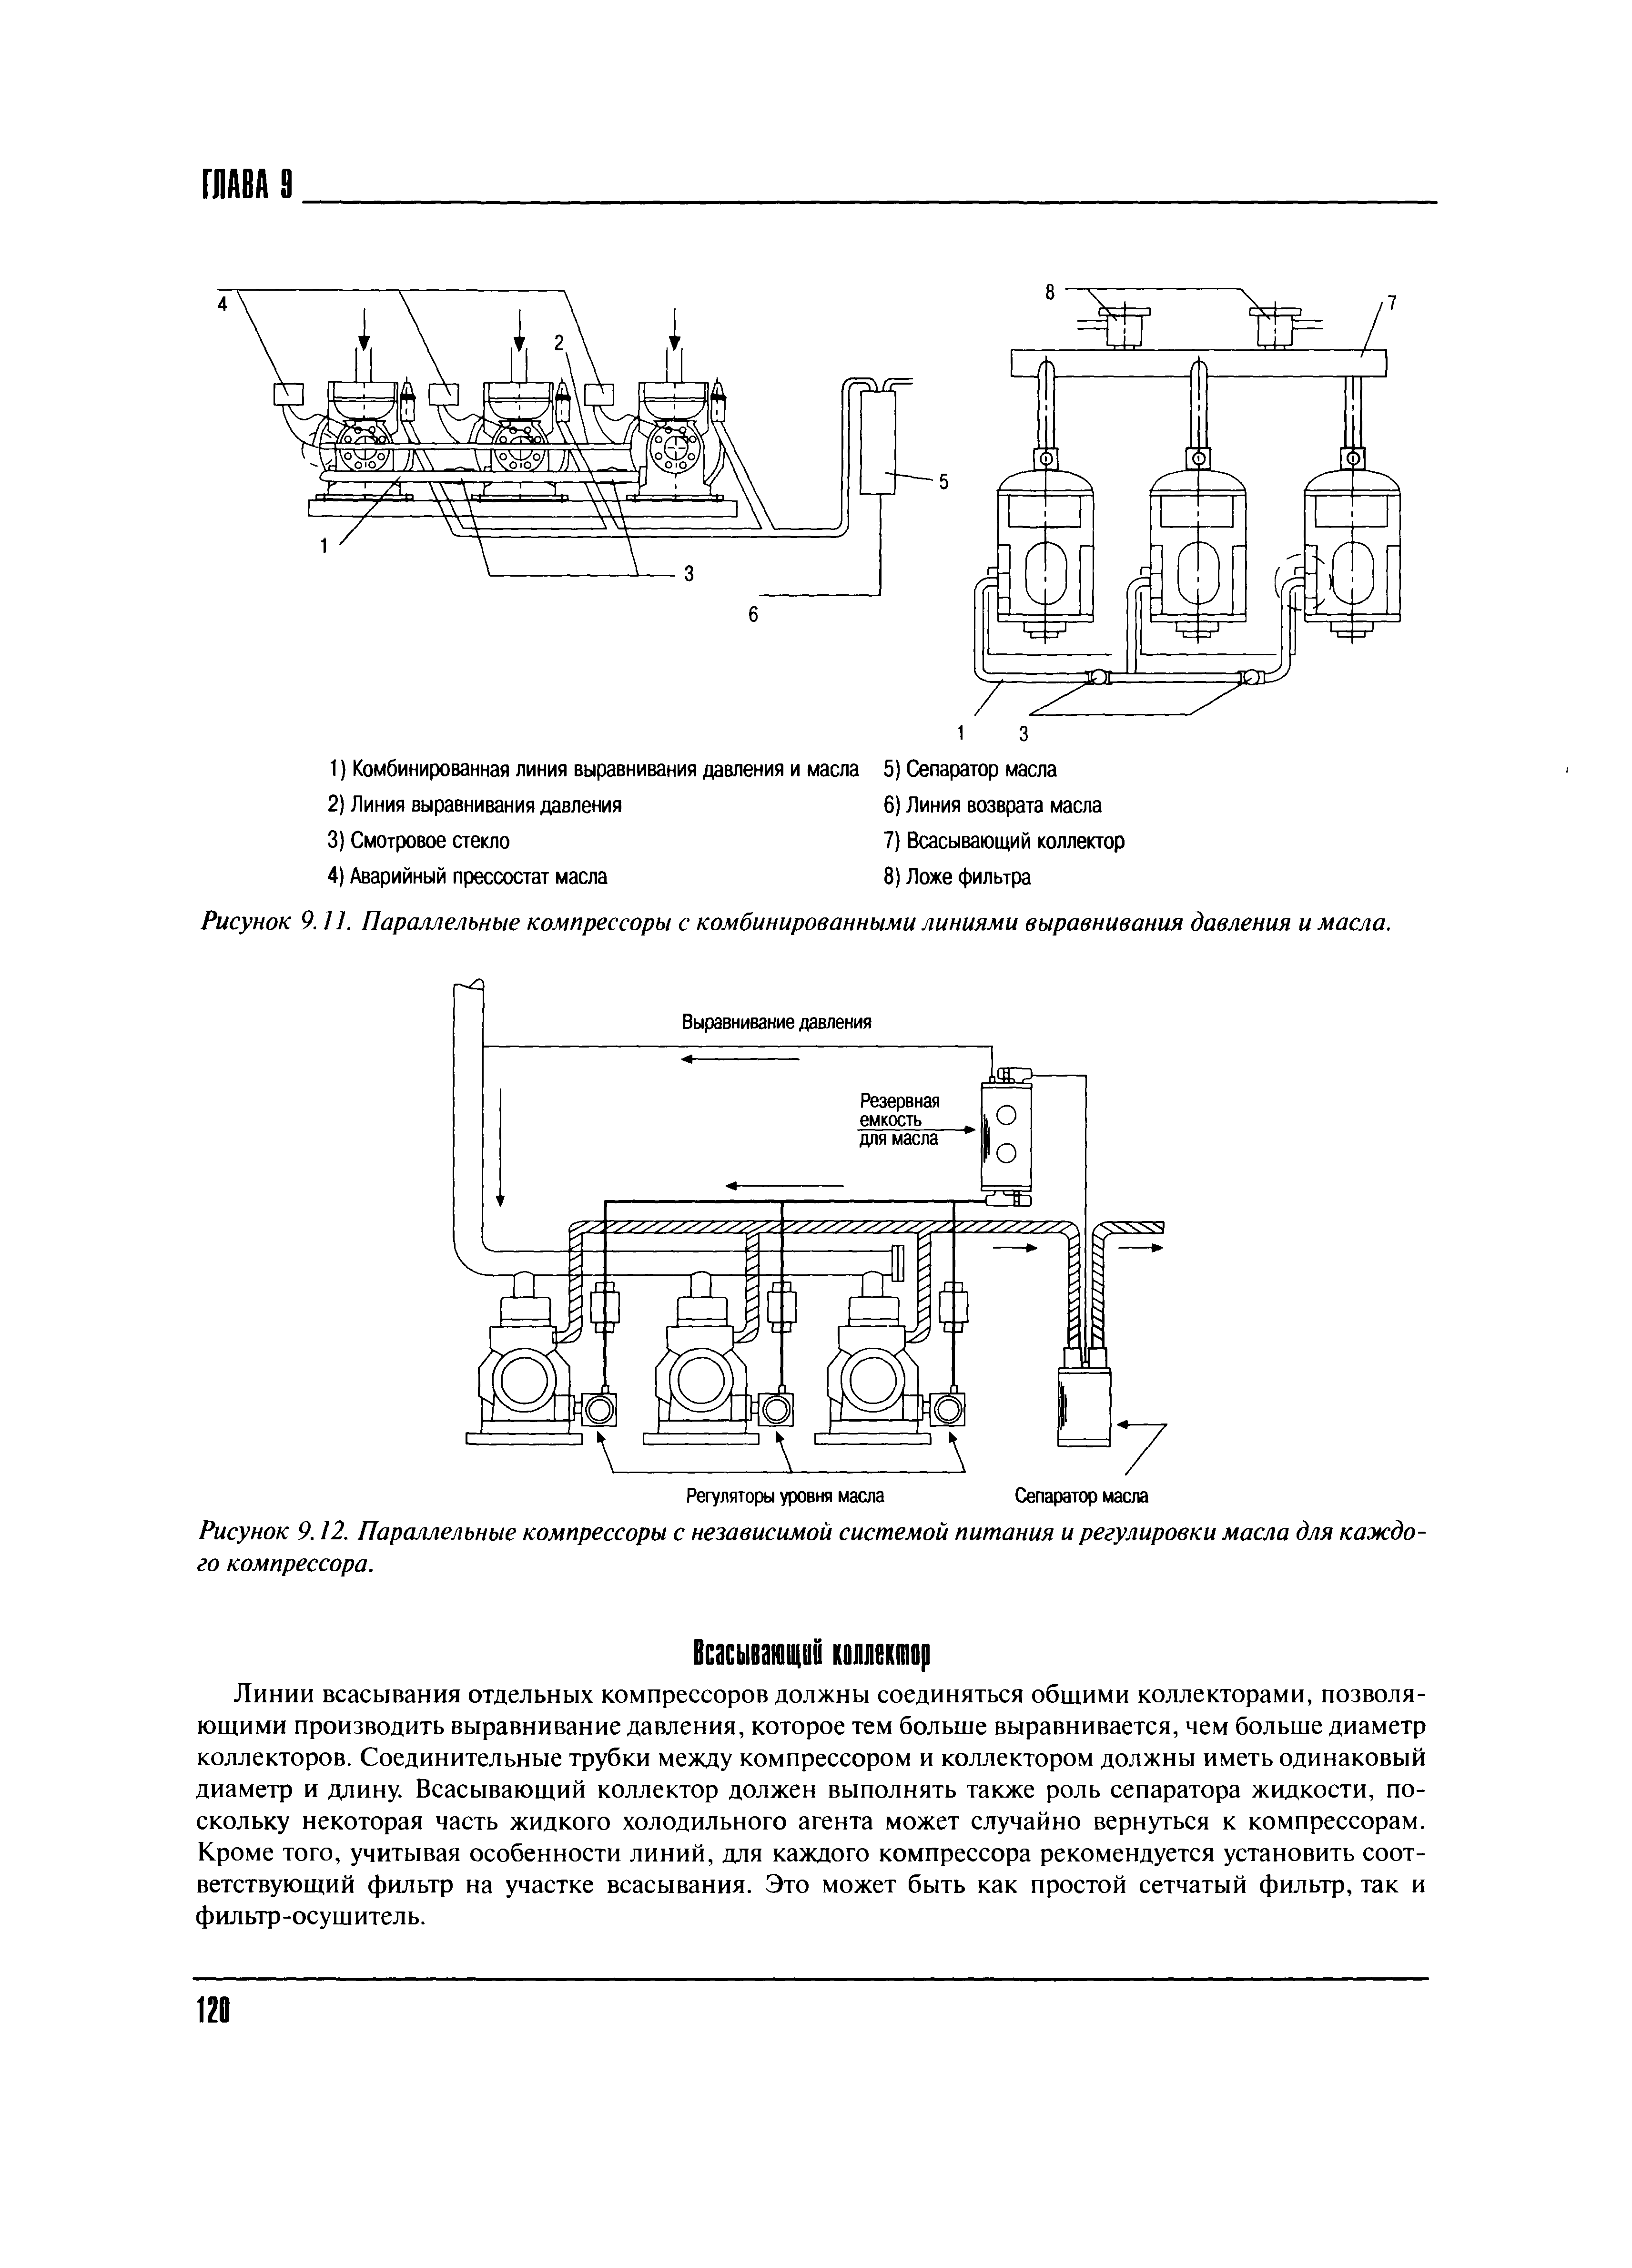 Рисунок 9. ] ]. Параллельные компрессоры с комбинированными линиями выравнивания давления и масла.